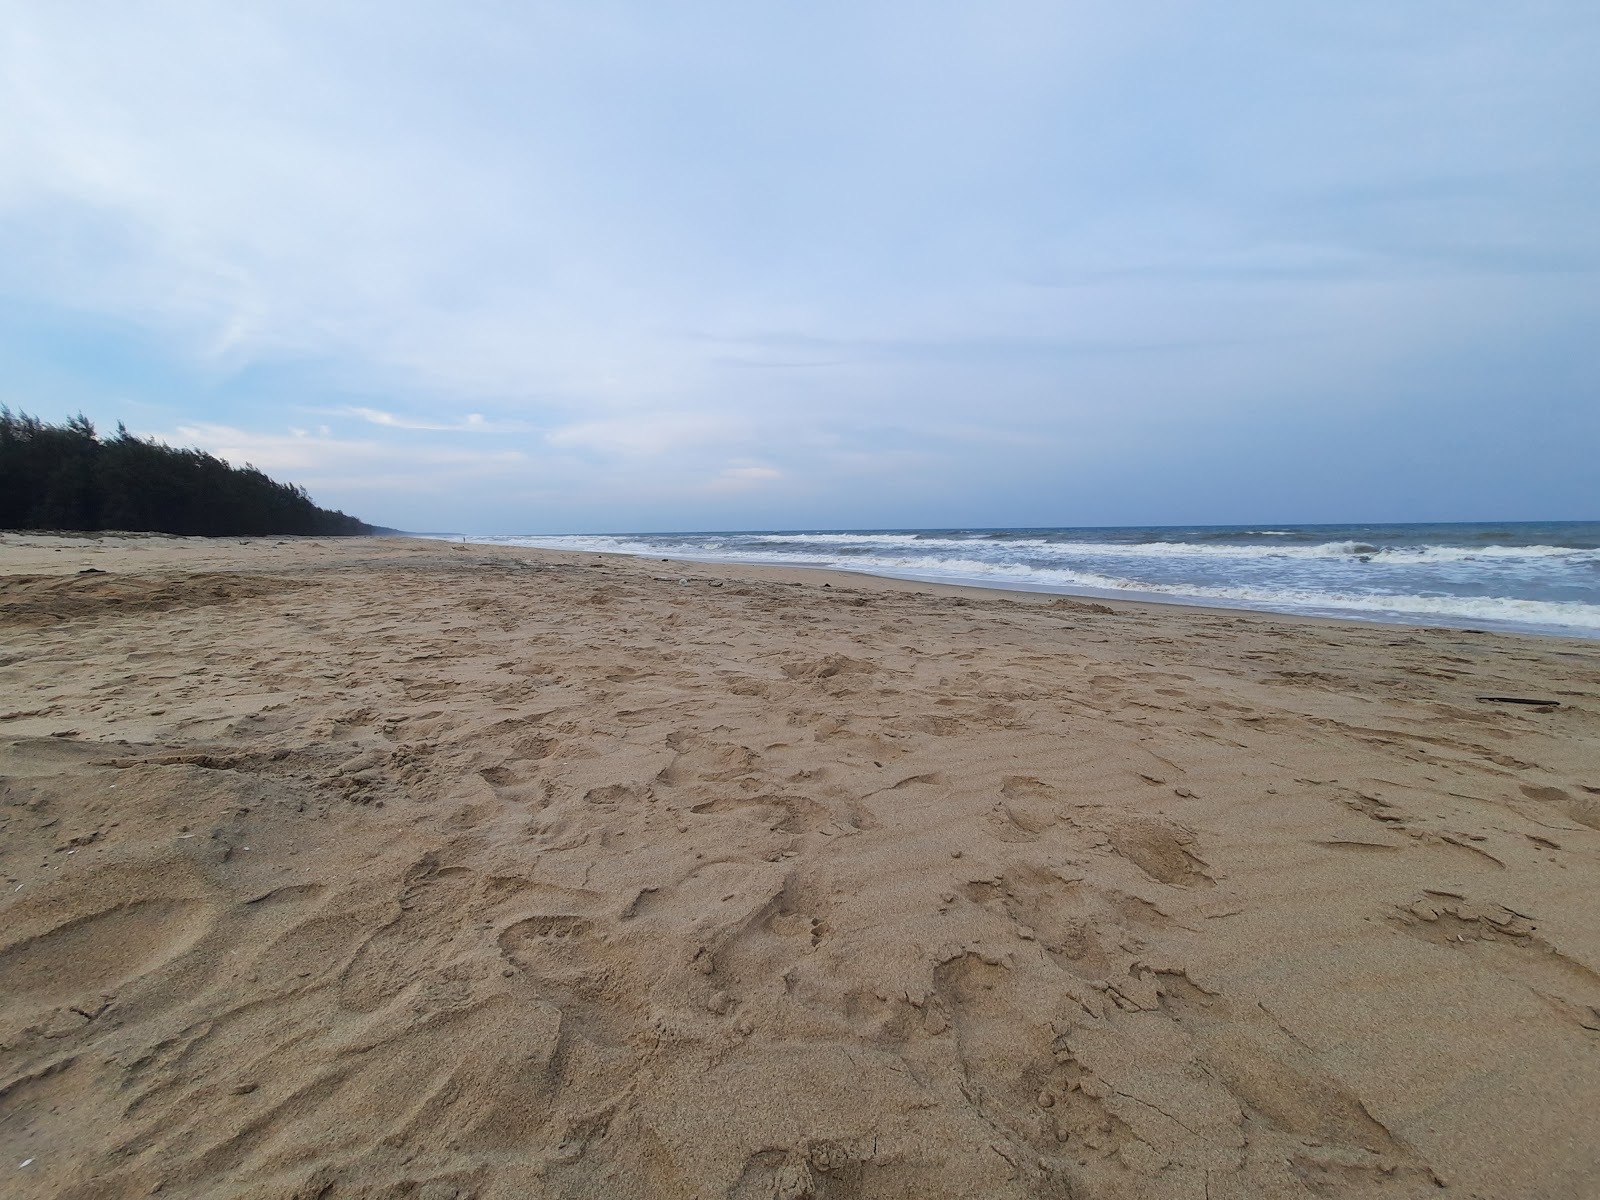 Photo de Koozhaiyar Beach - endroit populaire parmi les connaisseurs de la détente